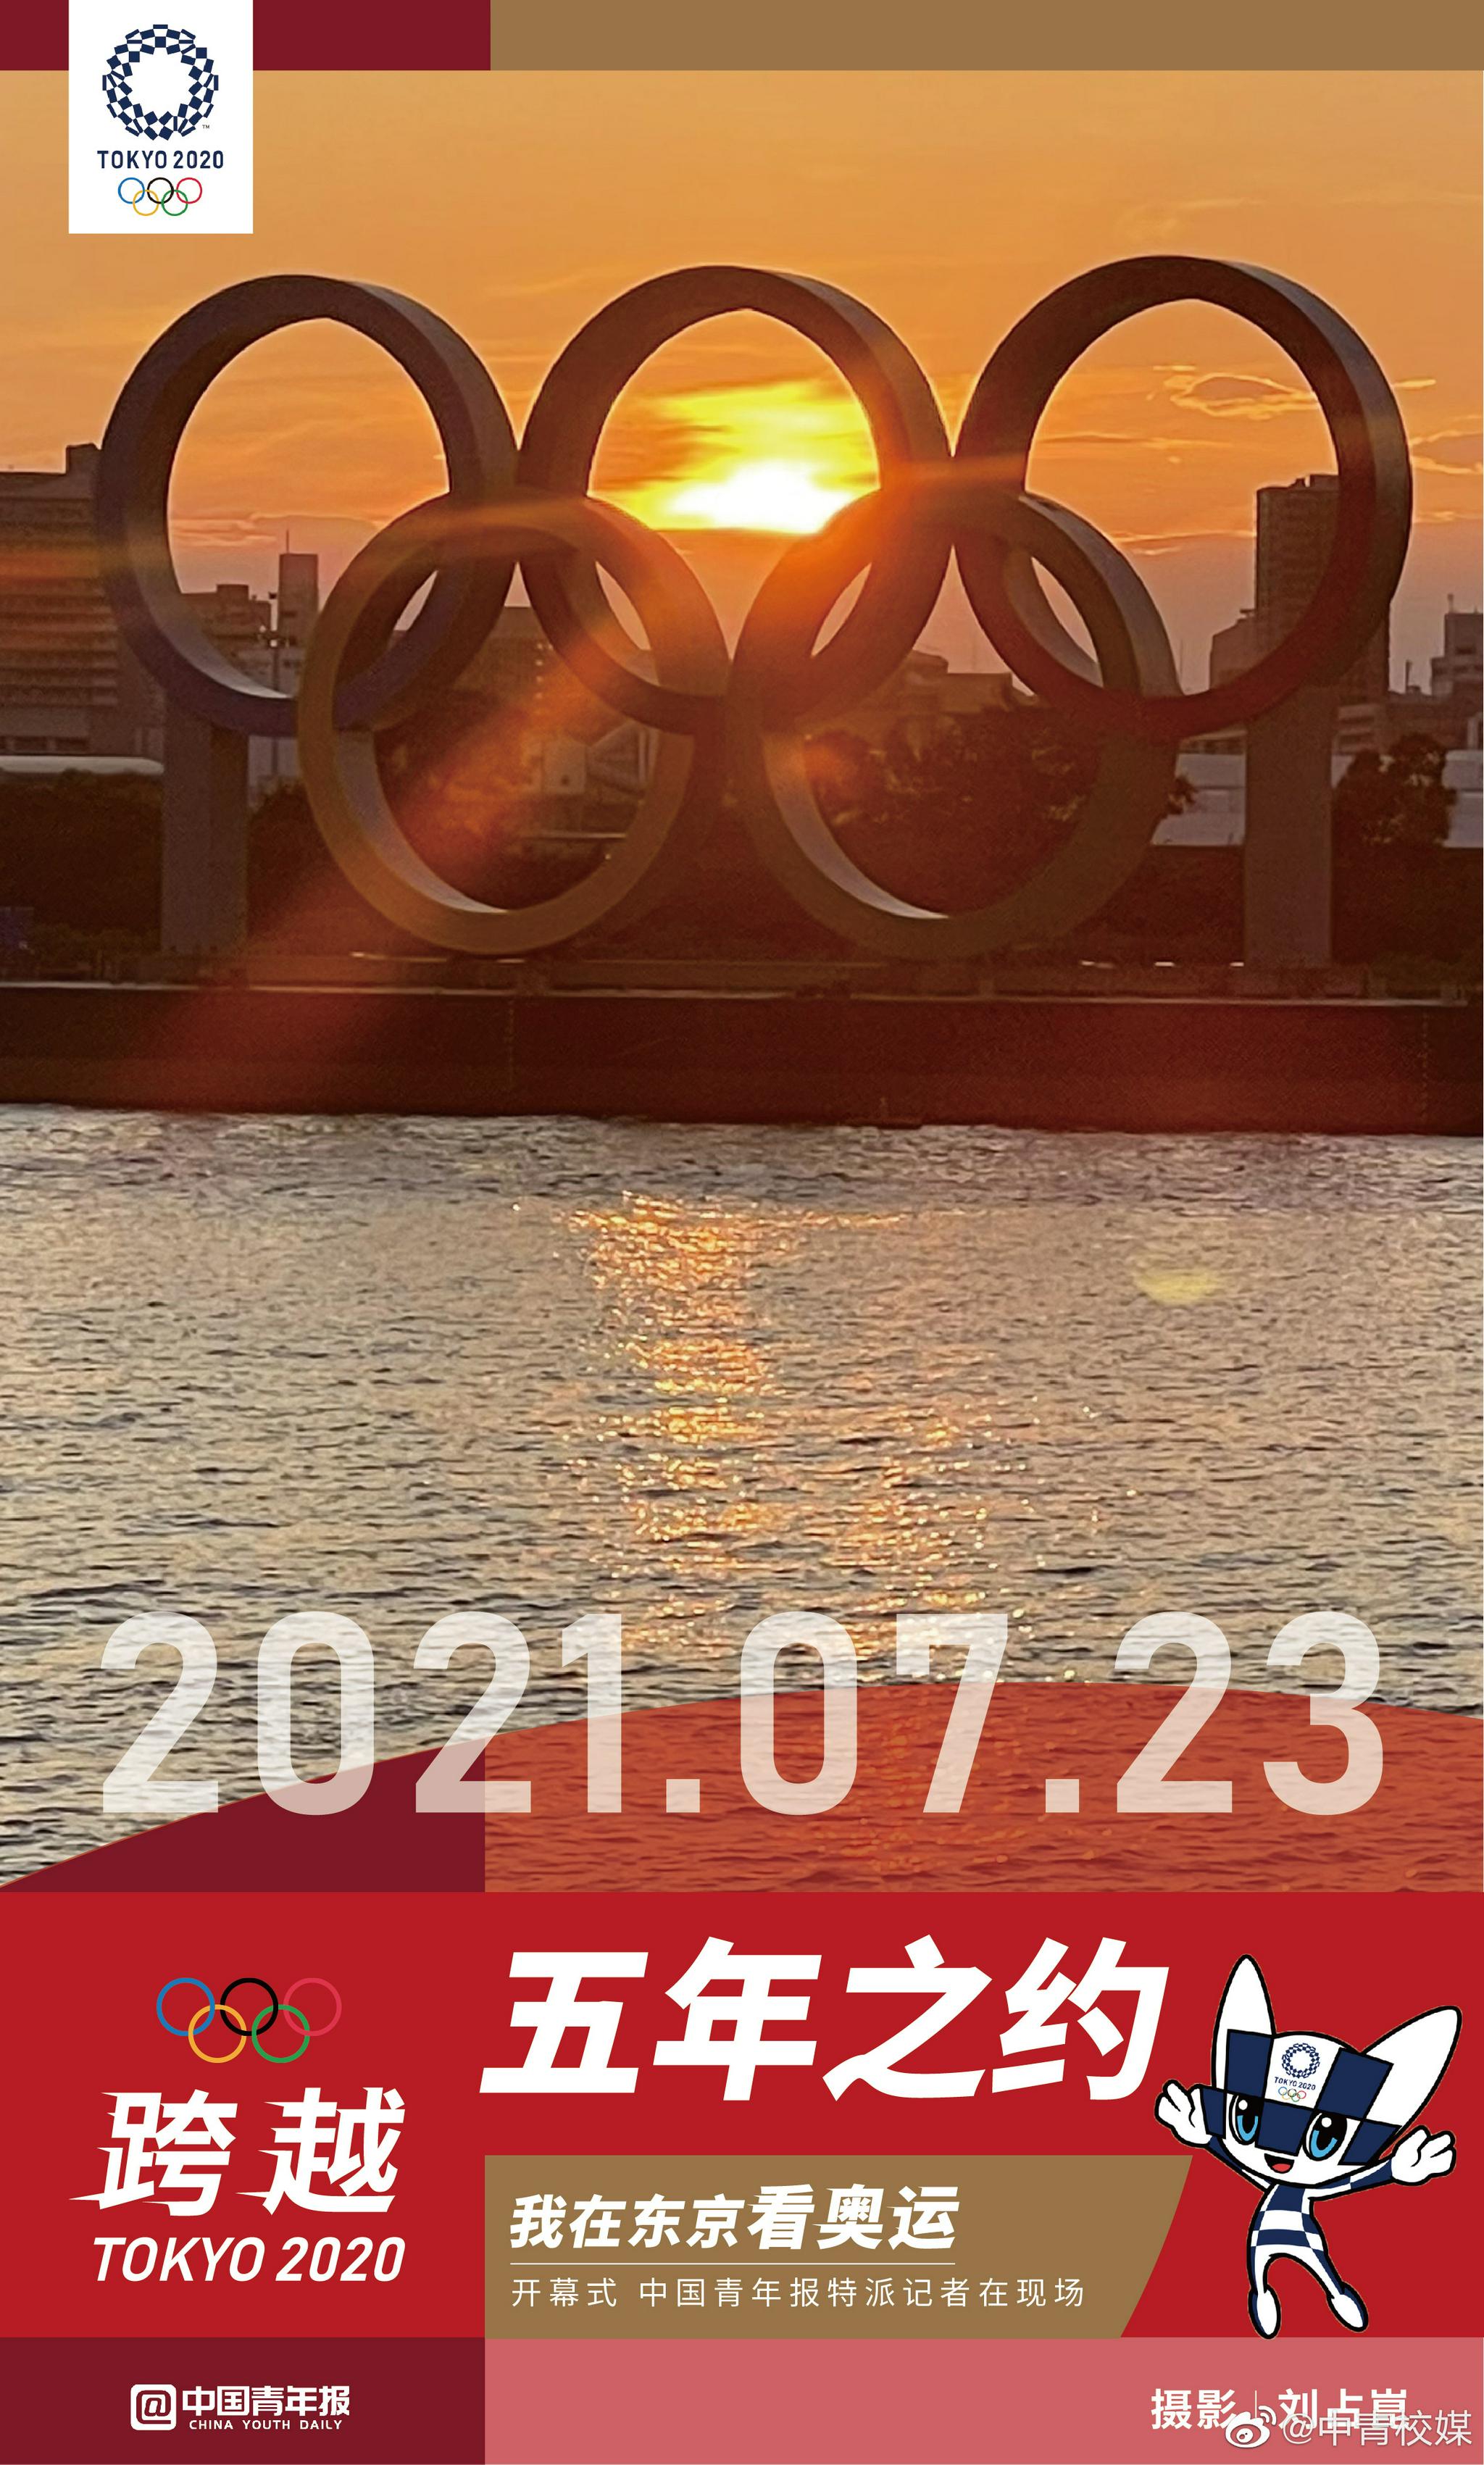 经过5年等待,2020年东京奥运会终于要在北京时间